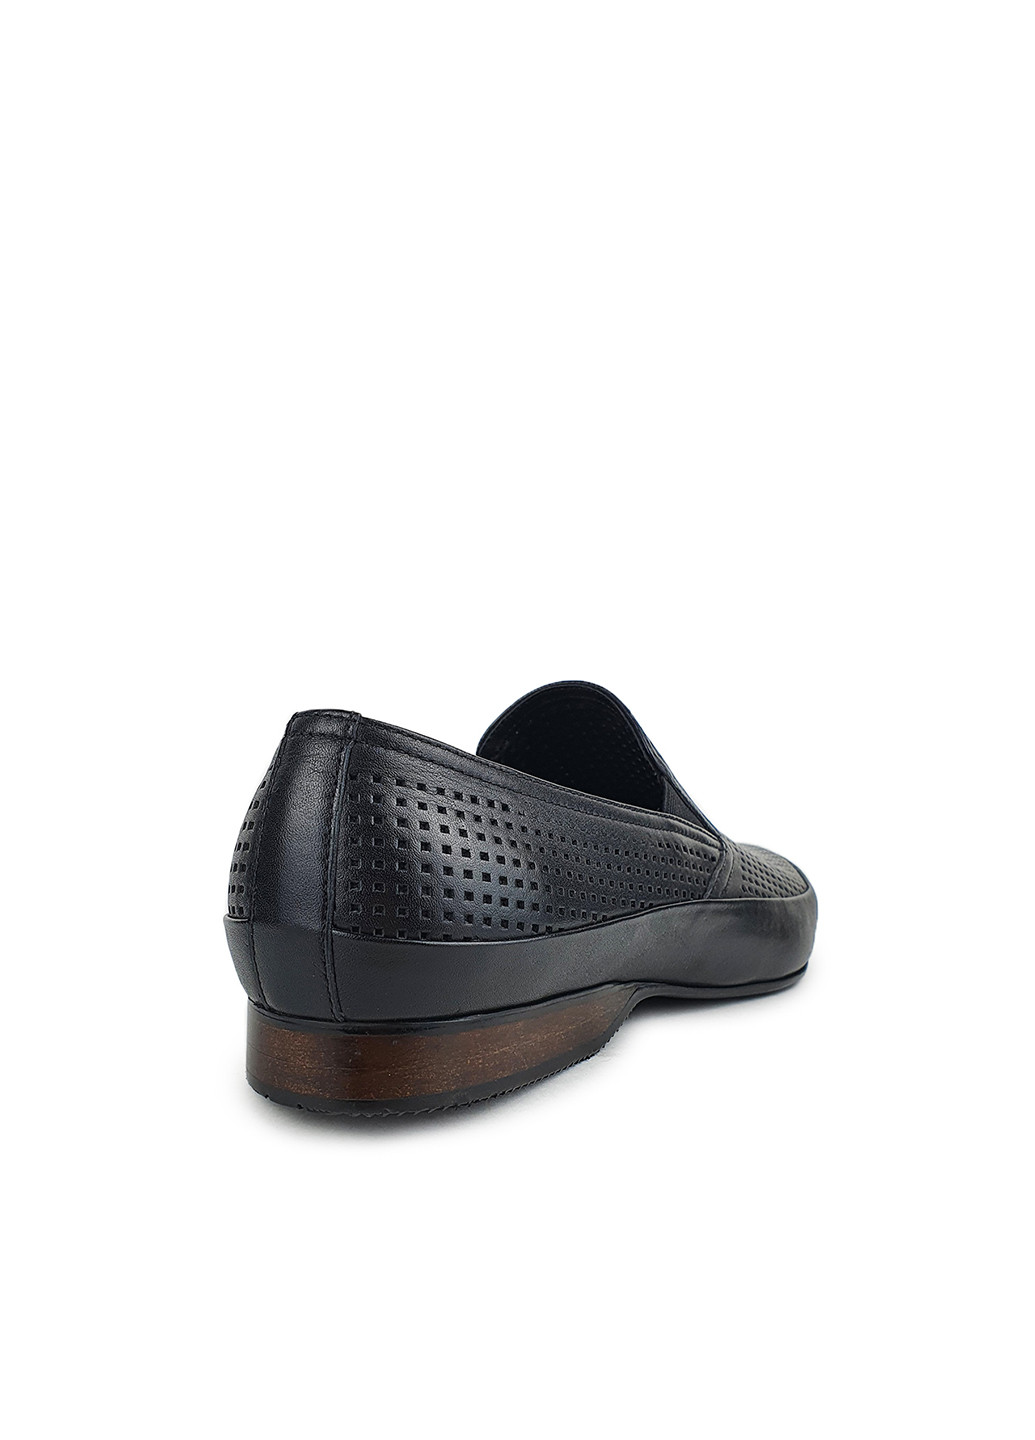 Черные повседневные летние туфли мужские классические из натуральной кожи черные,, mp759-1-1чер также, 39 Cosottinni